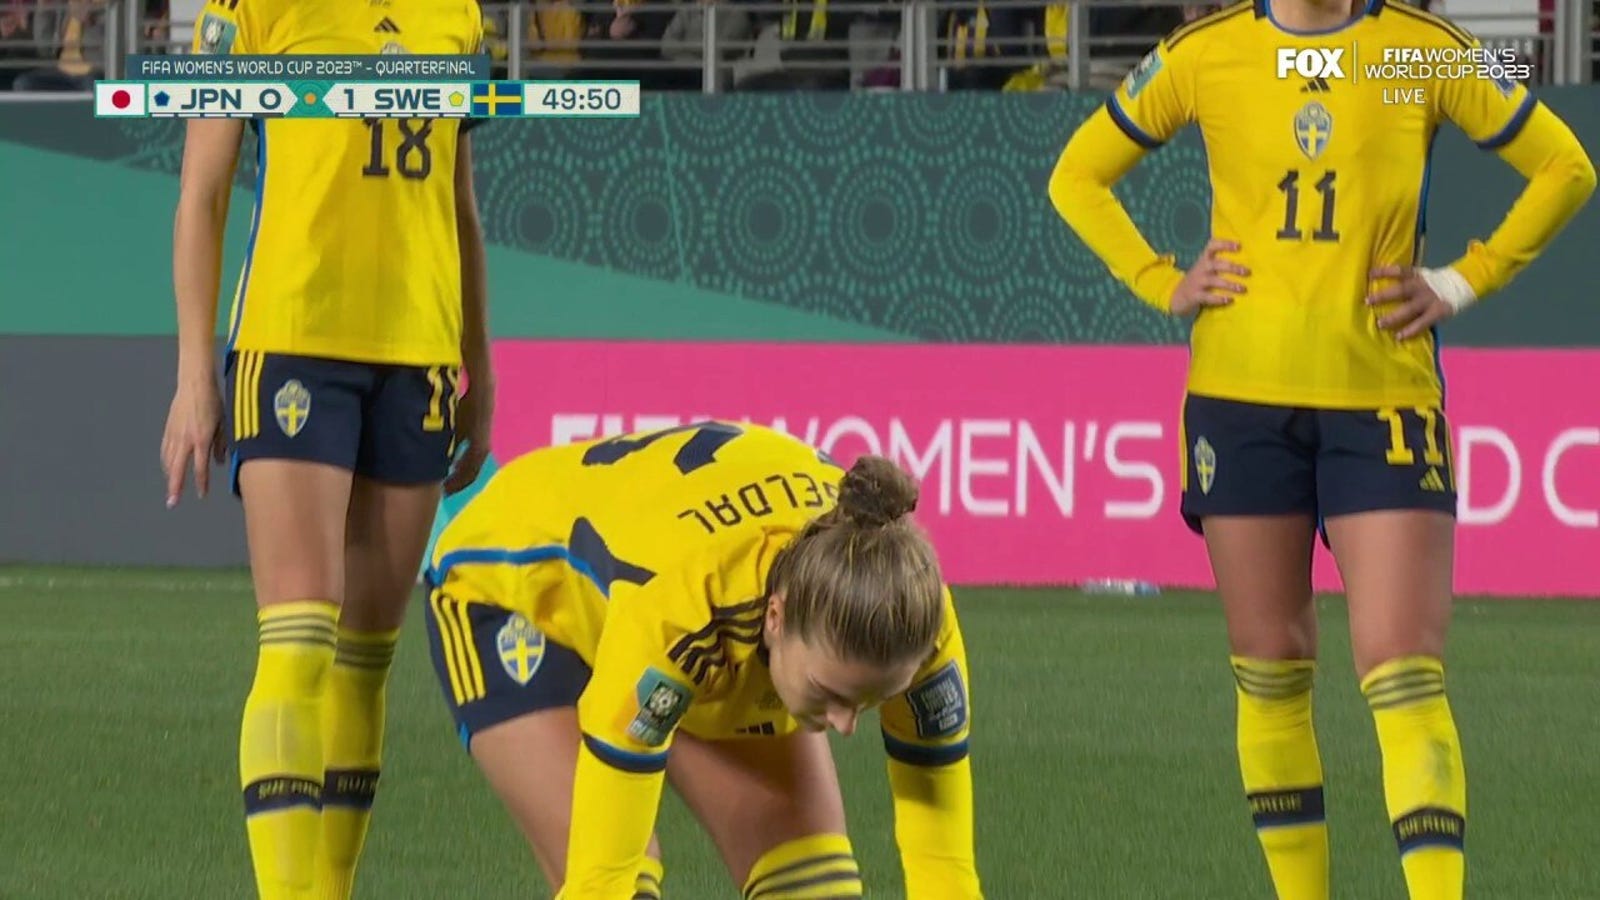 Philippa Engeldahl de Suecia marca un gol contra Japón en el minuto 51